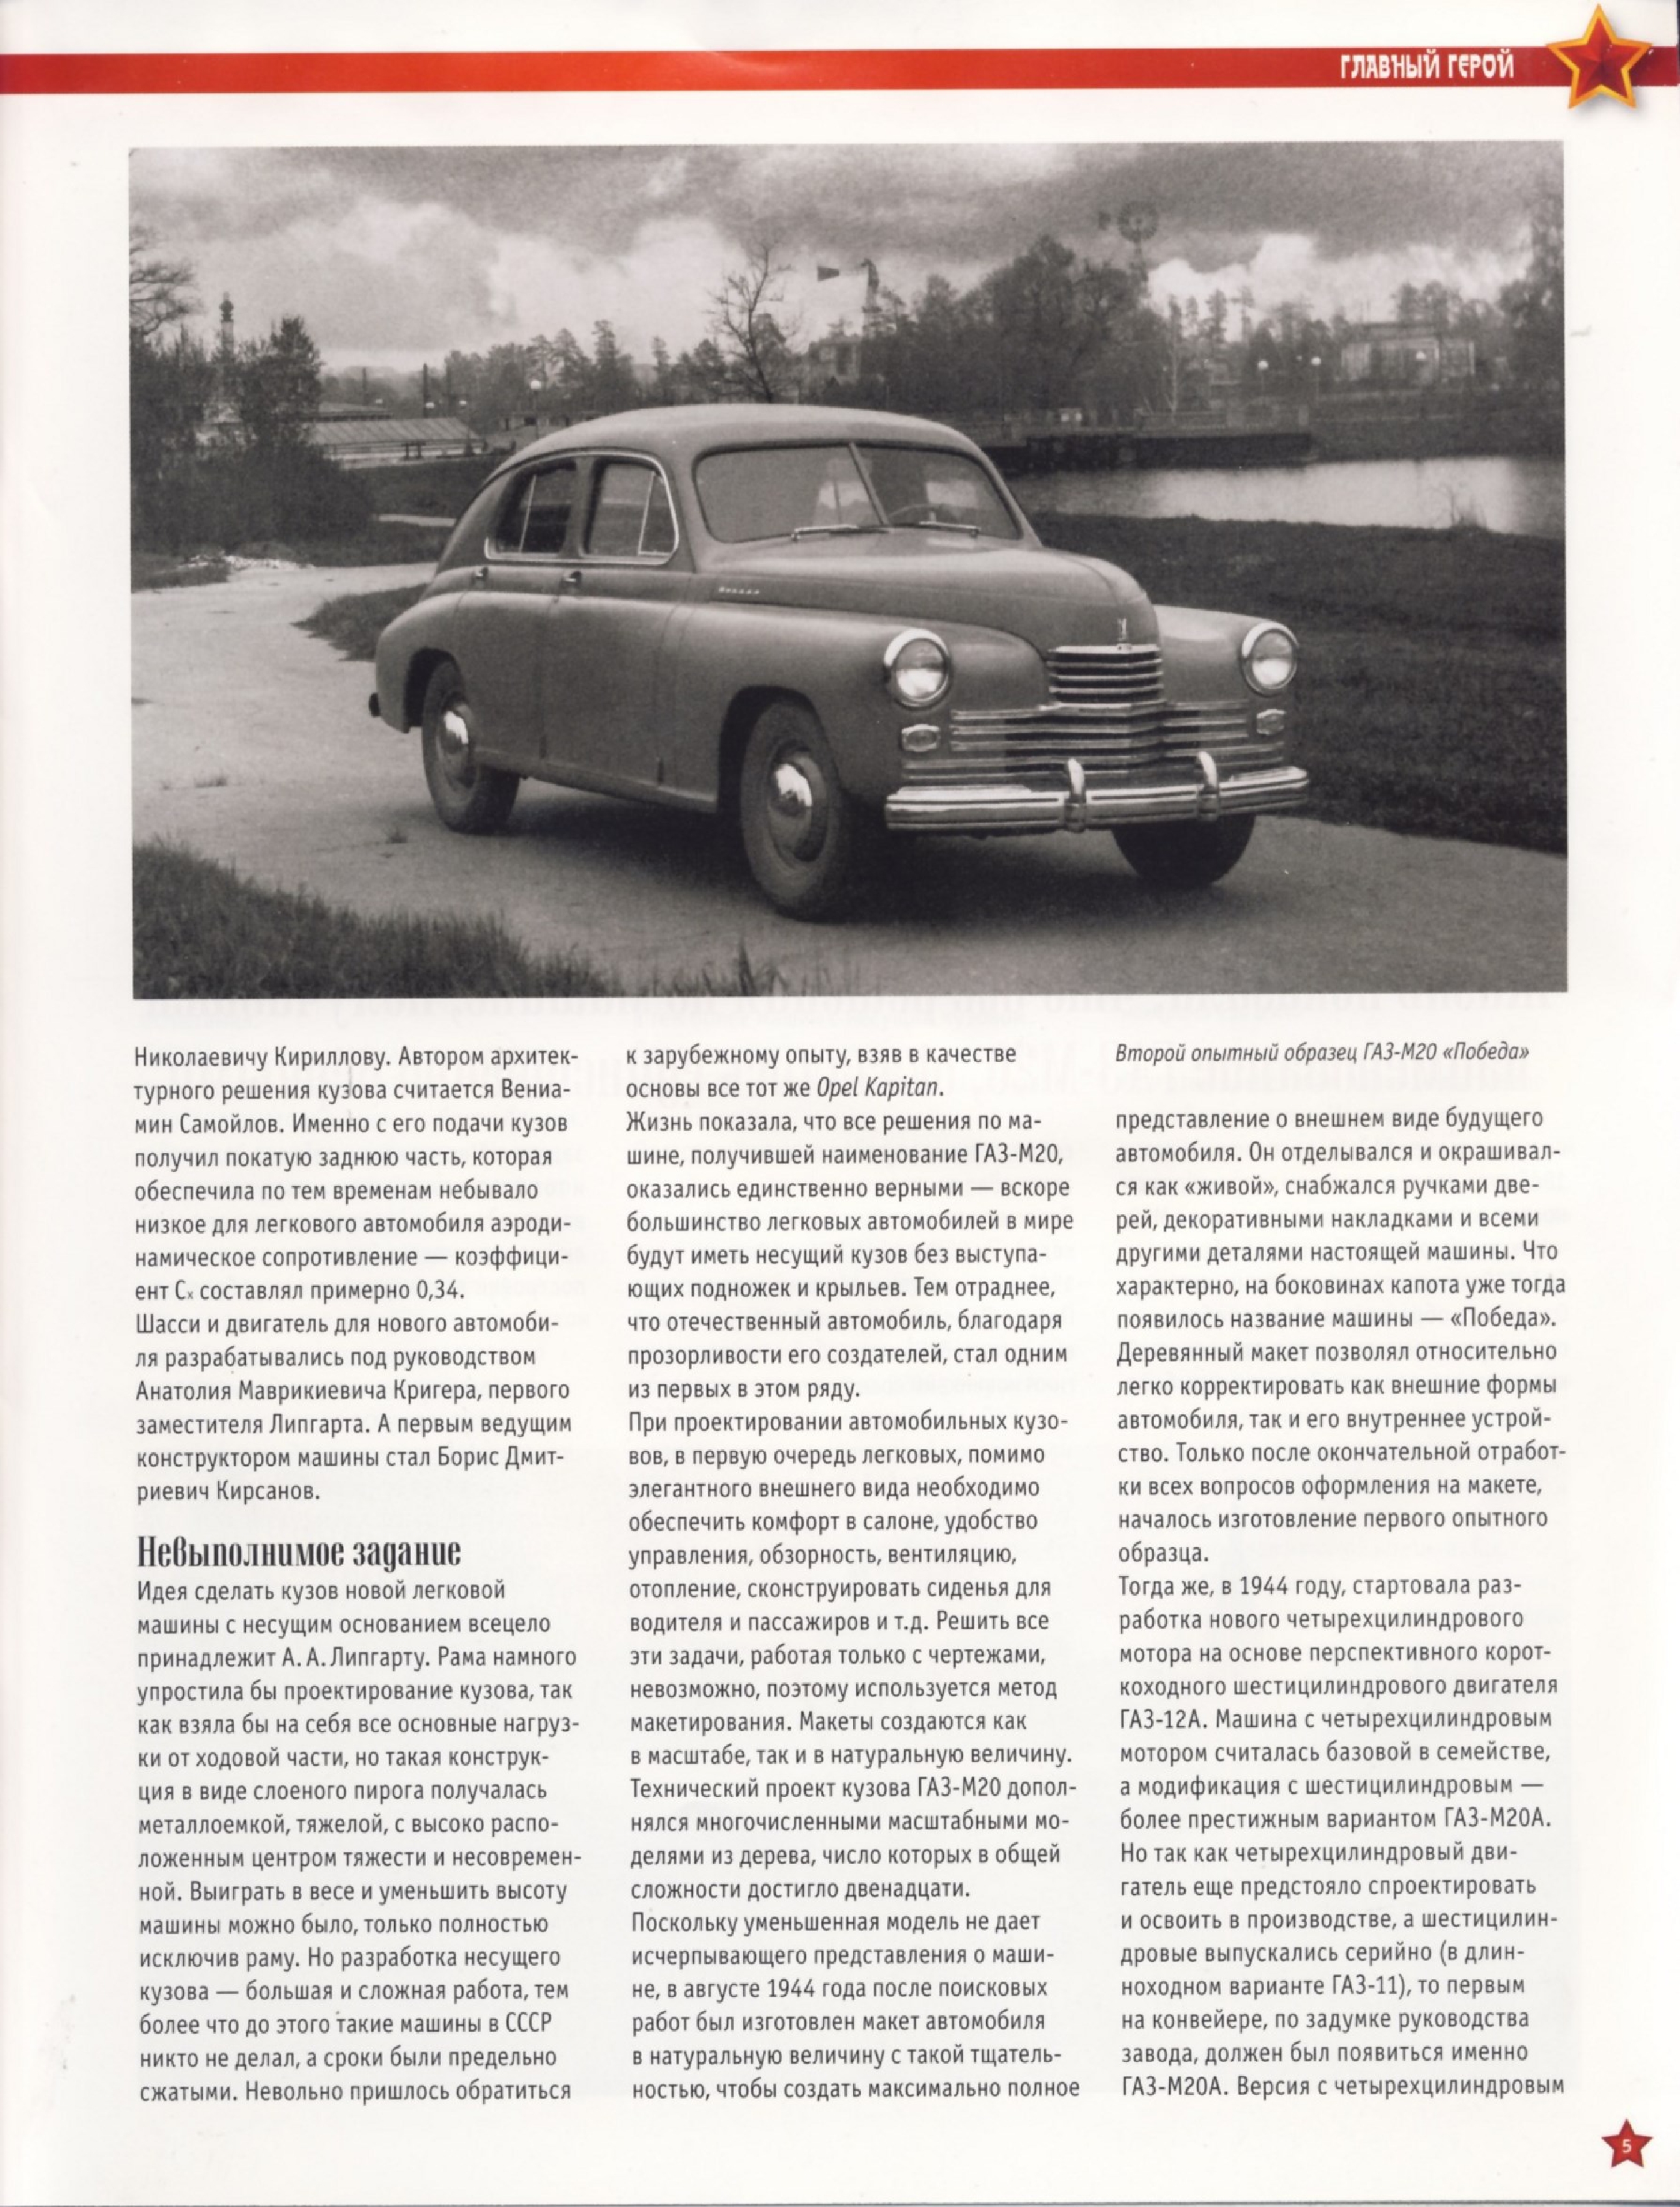 Automobile legend CCCP 185 GAZ M20 VICTORY.pdf